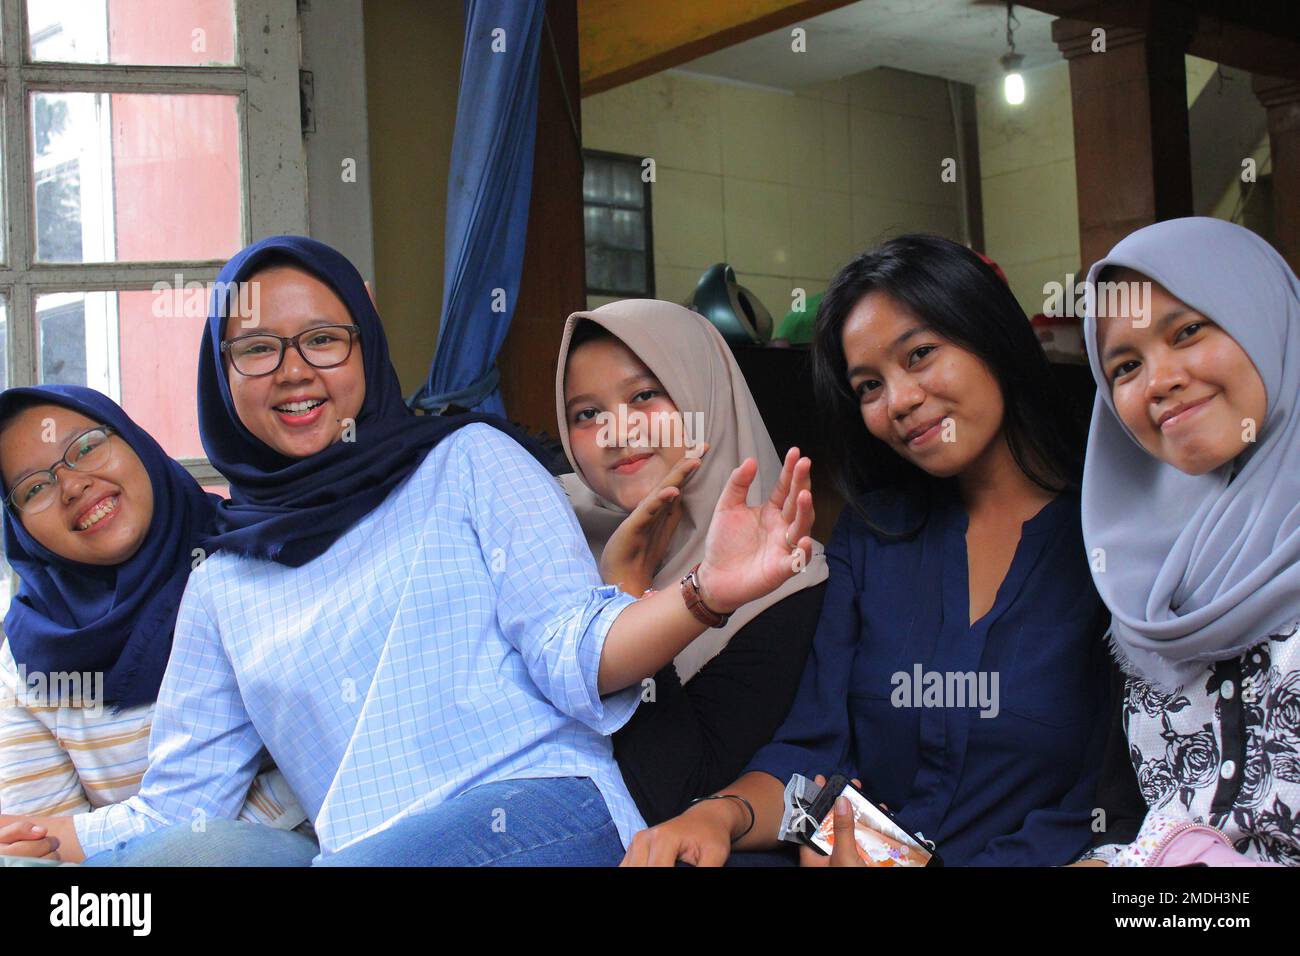 Jakarta, Indonesien - 02 24 2020: Ausdruck von Hijab-Frauen, die sich versammeln und glücklich aussehen Stockfoto